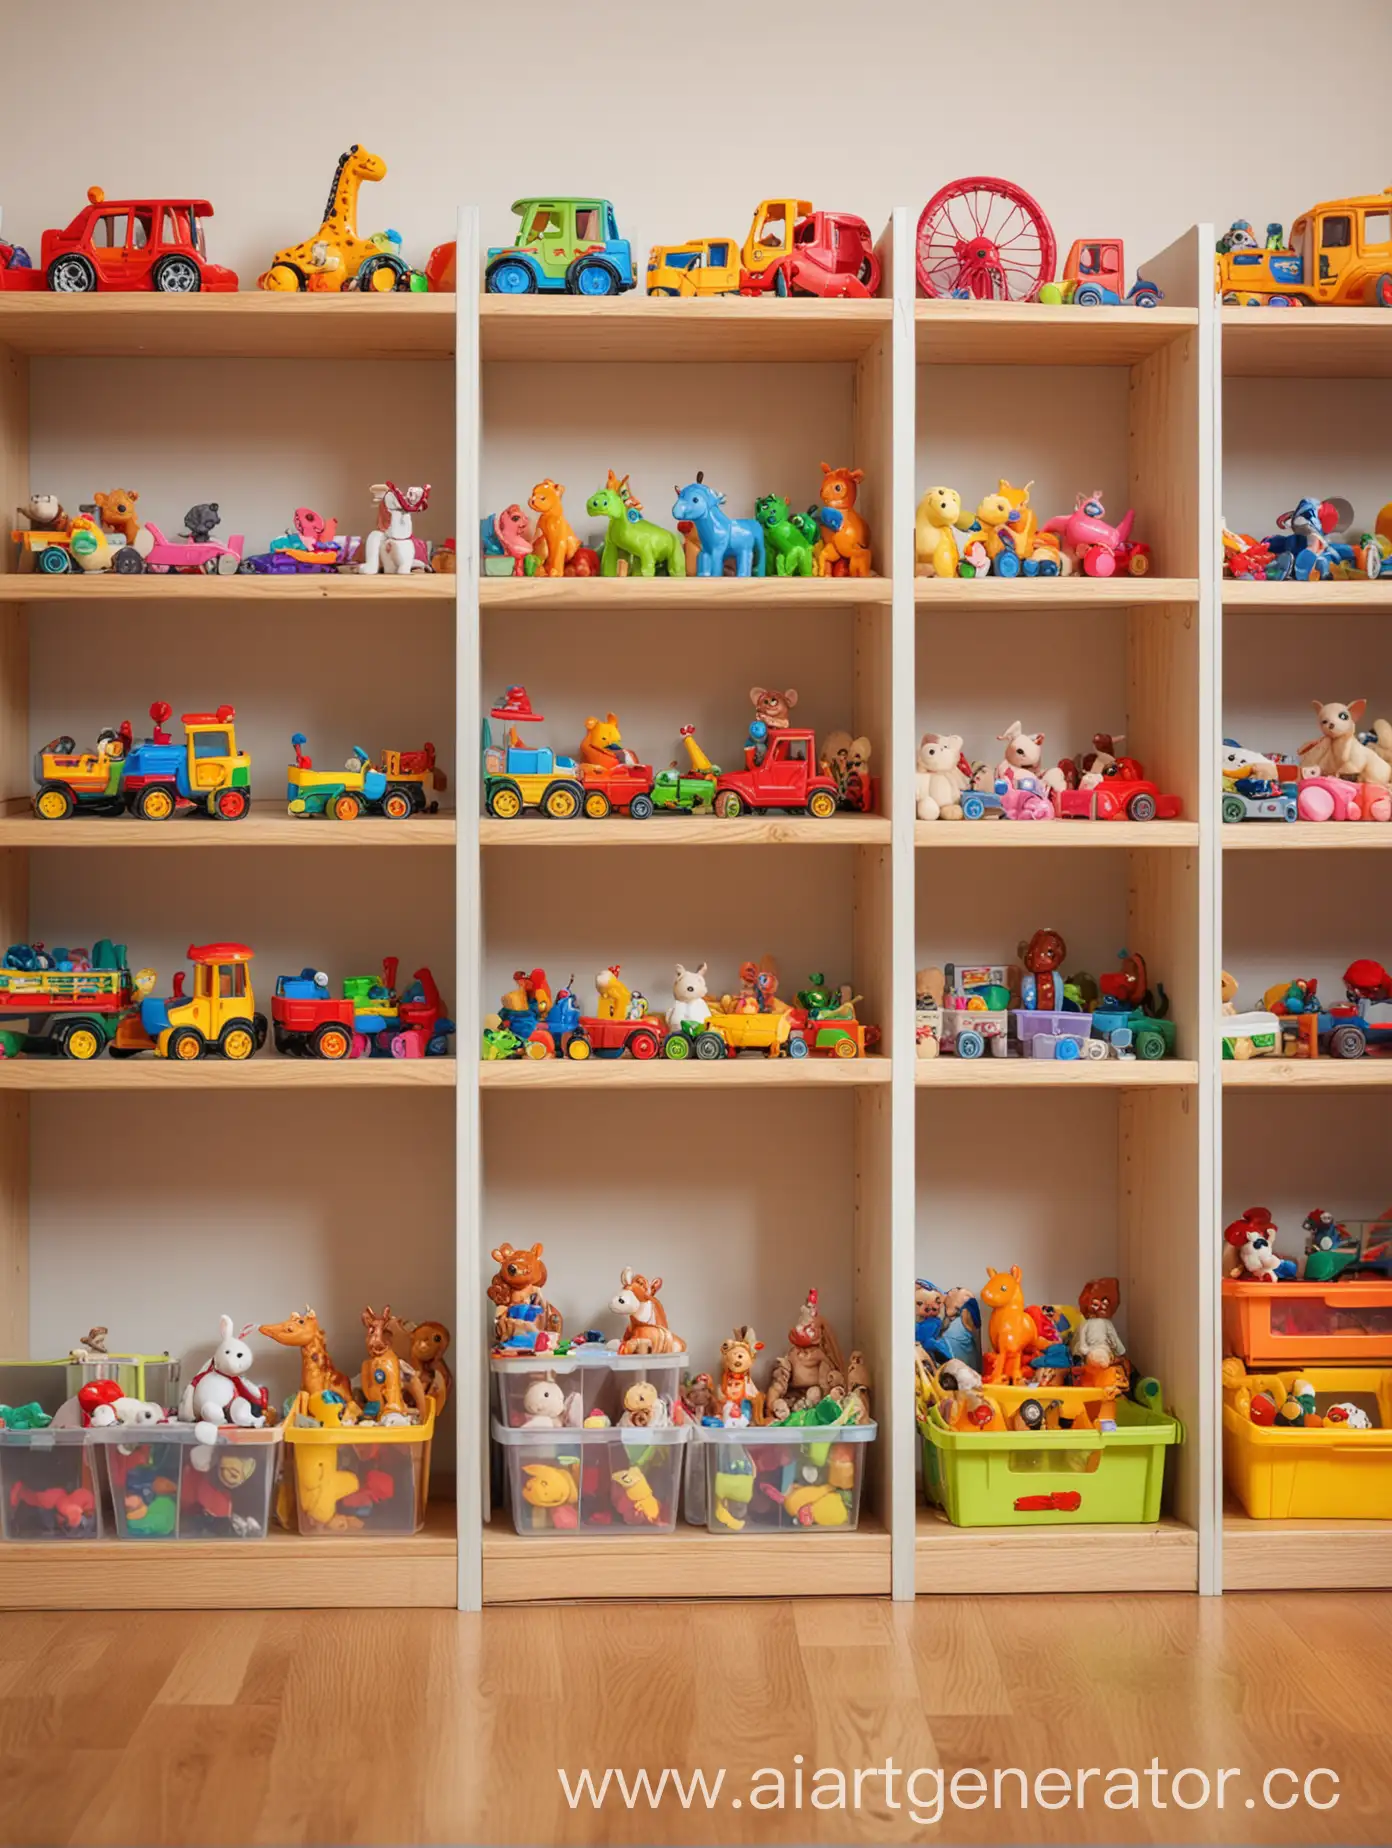 Фотография игровой комнаты детского сада (полки с игрушками, яркие цвета) - немного заблюренное как боке